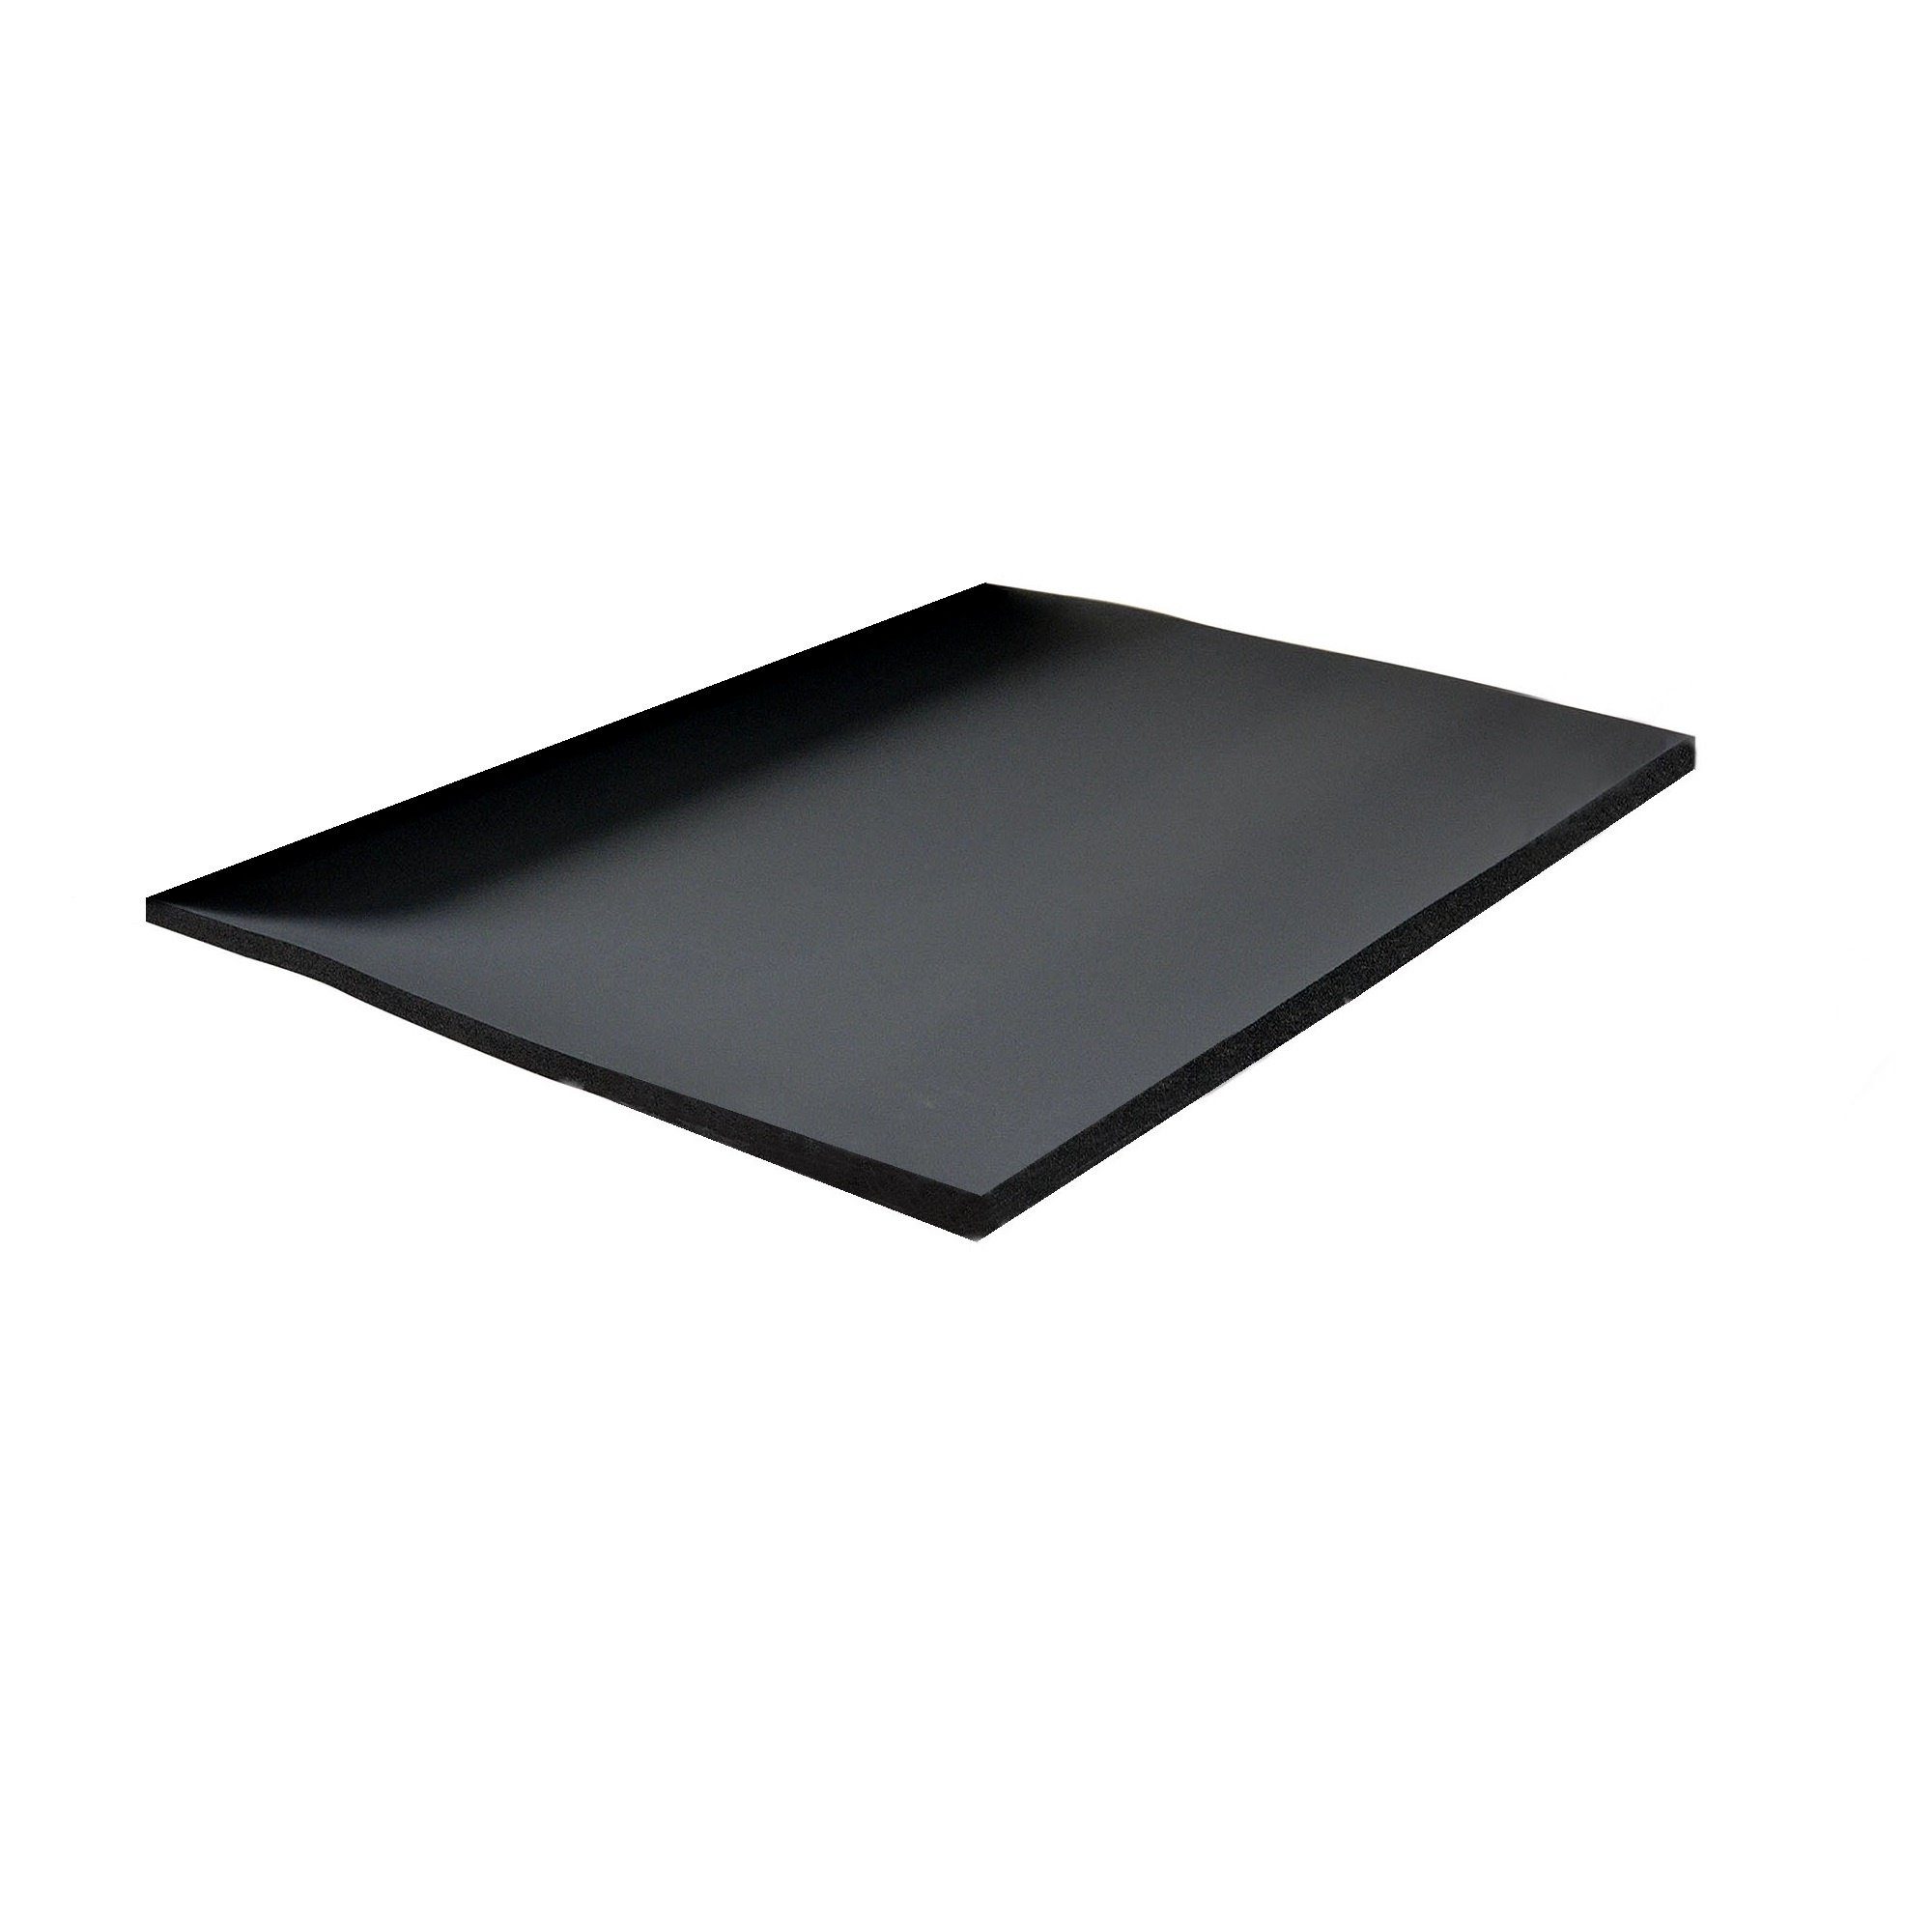 Kautschuk Klebeband für Armaflex® XG Platten schwarz 50 mm x 15 m :  : Baumarkt